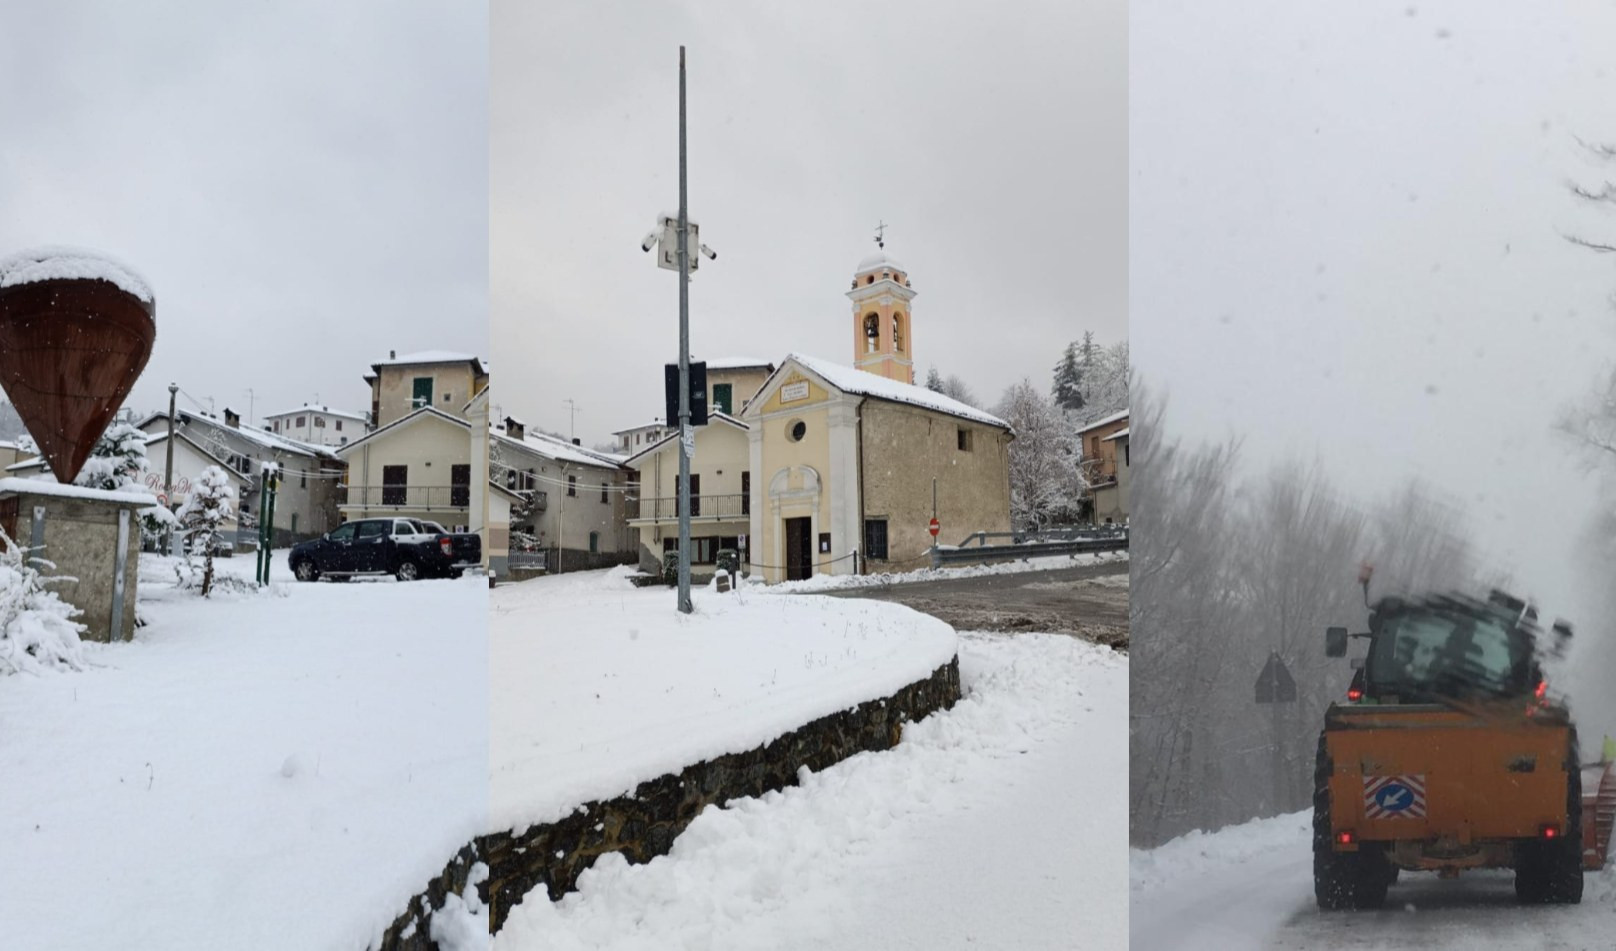 Prolungata l'allerta meteo neve, fiocchi in Val Bormida, Valle Scrivia e Valle Stura